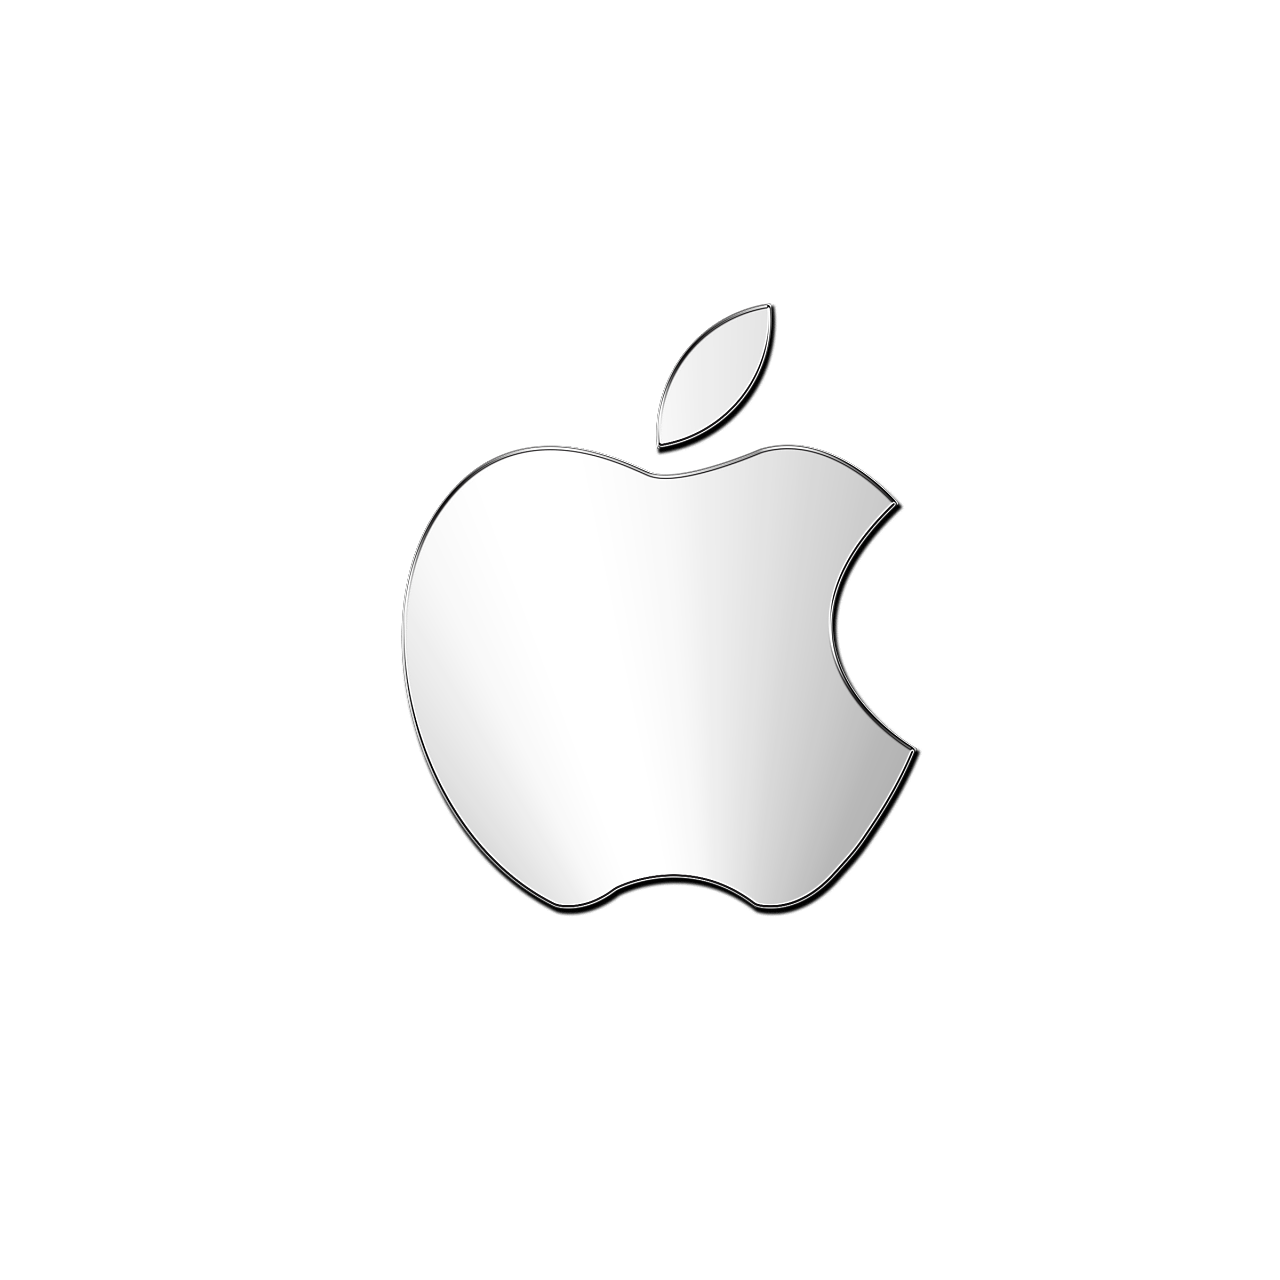 纯色苹果手机样机模板素材多角度展示Paper model iPhone X - 设计口袋